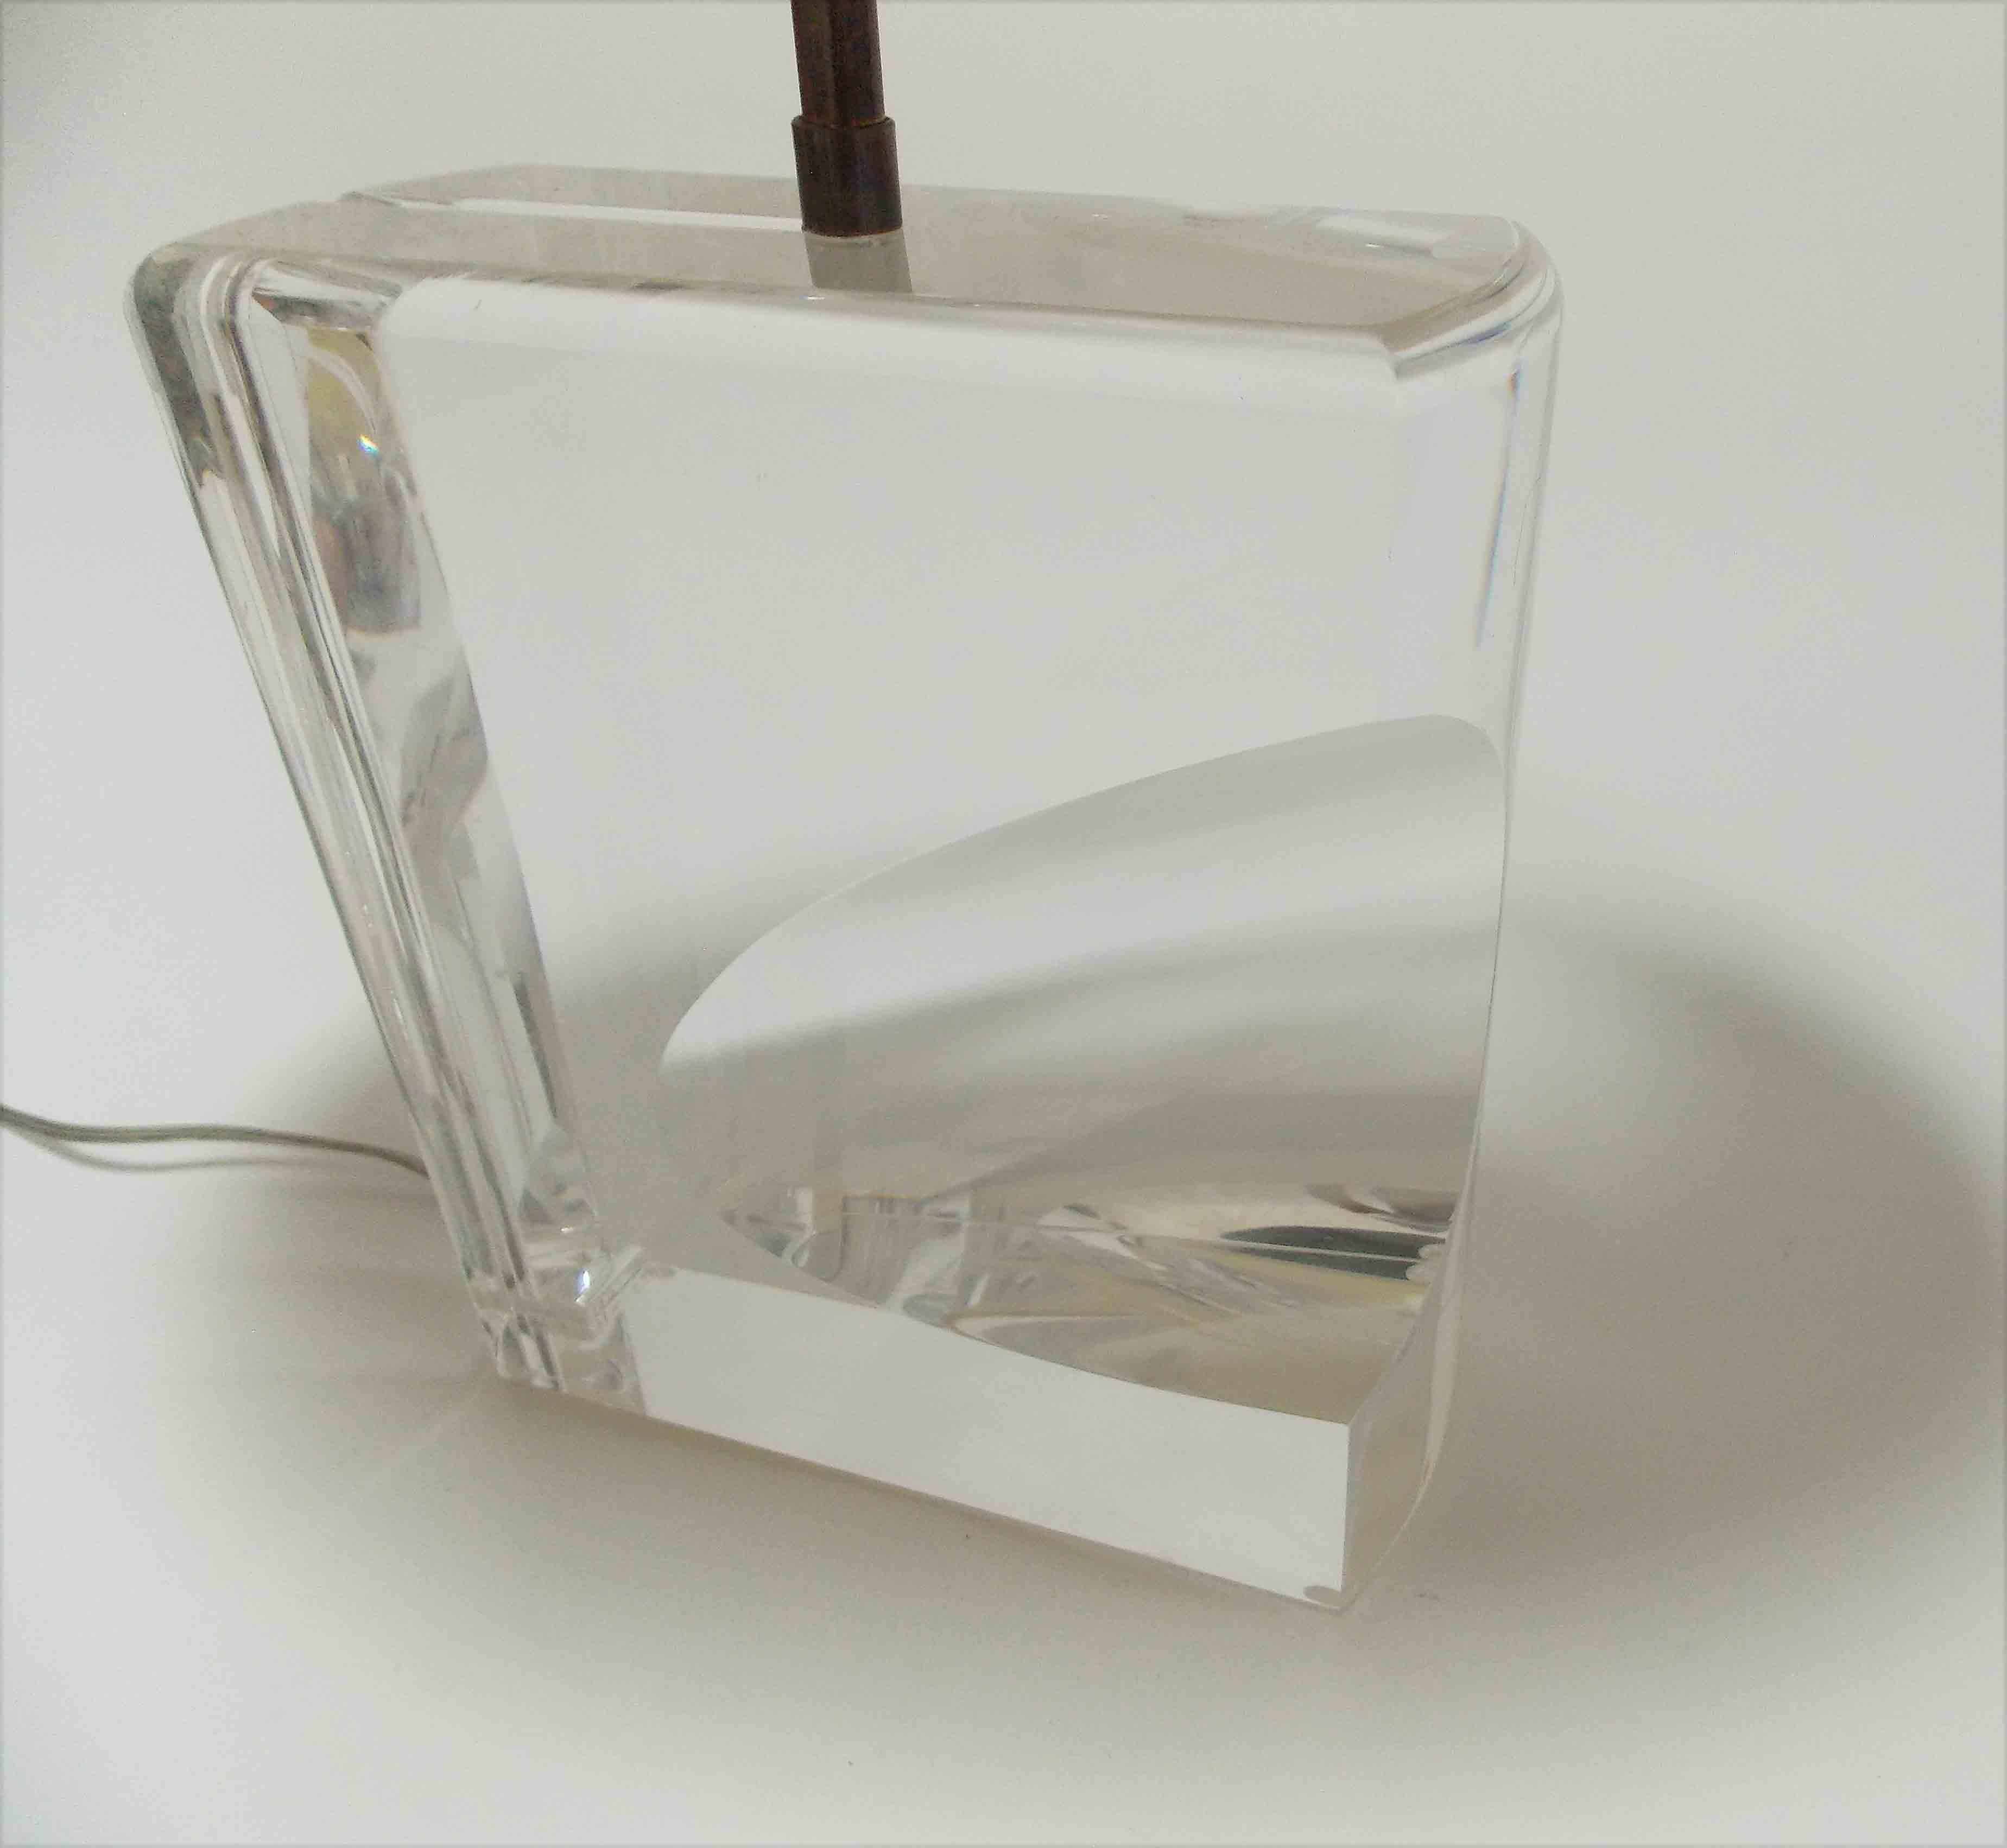 An acrylic lamp with an optical presence.